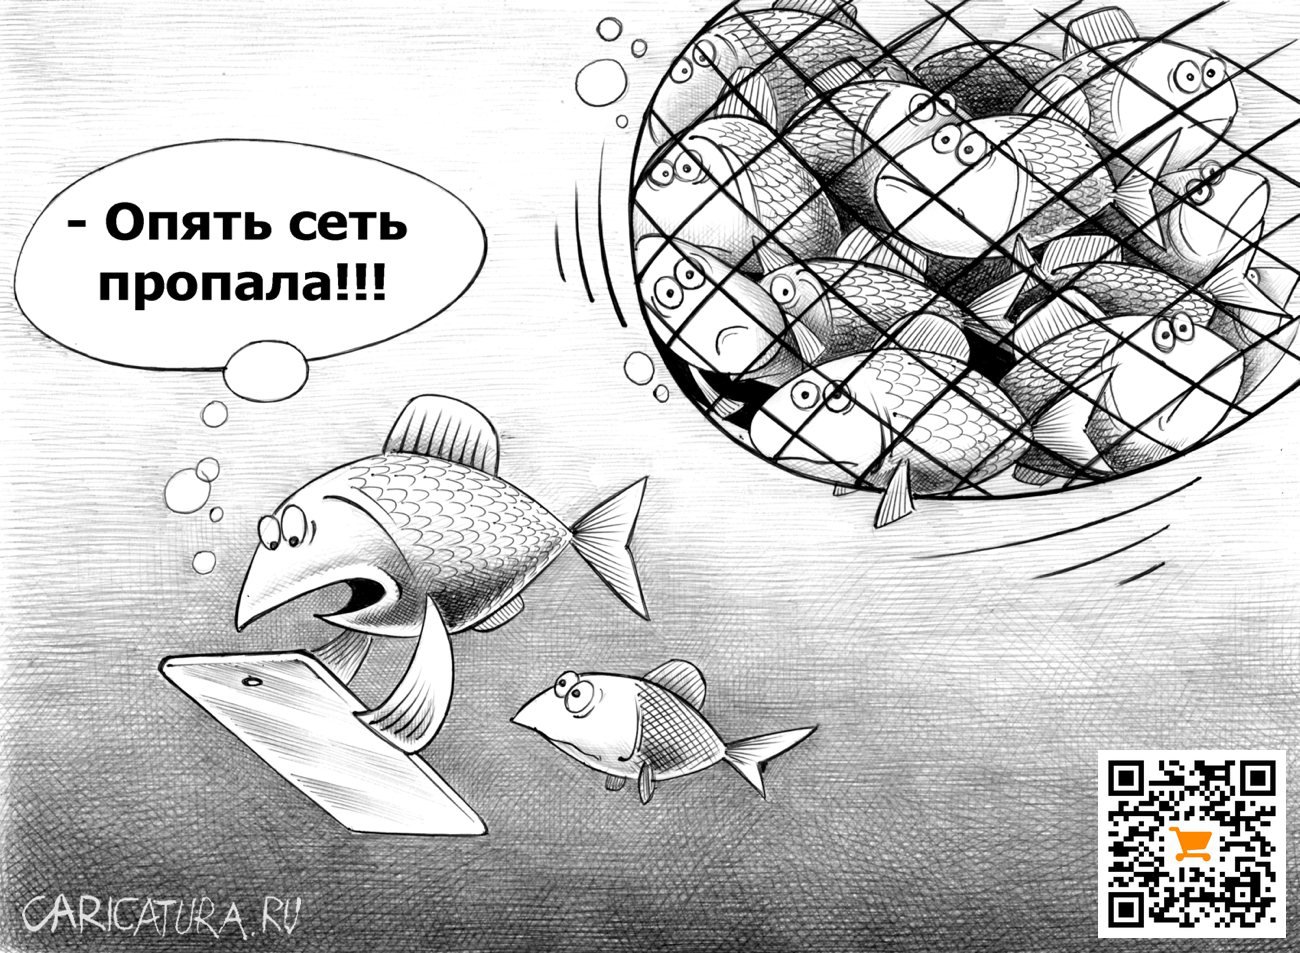 Карикатура "Сеть пропала", Сергей Корсун